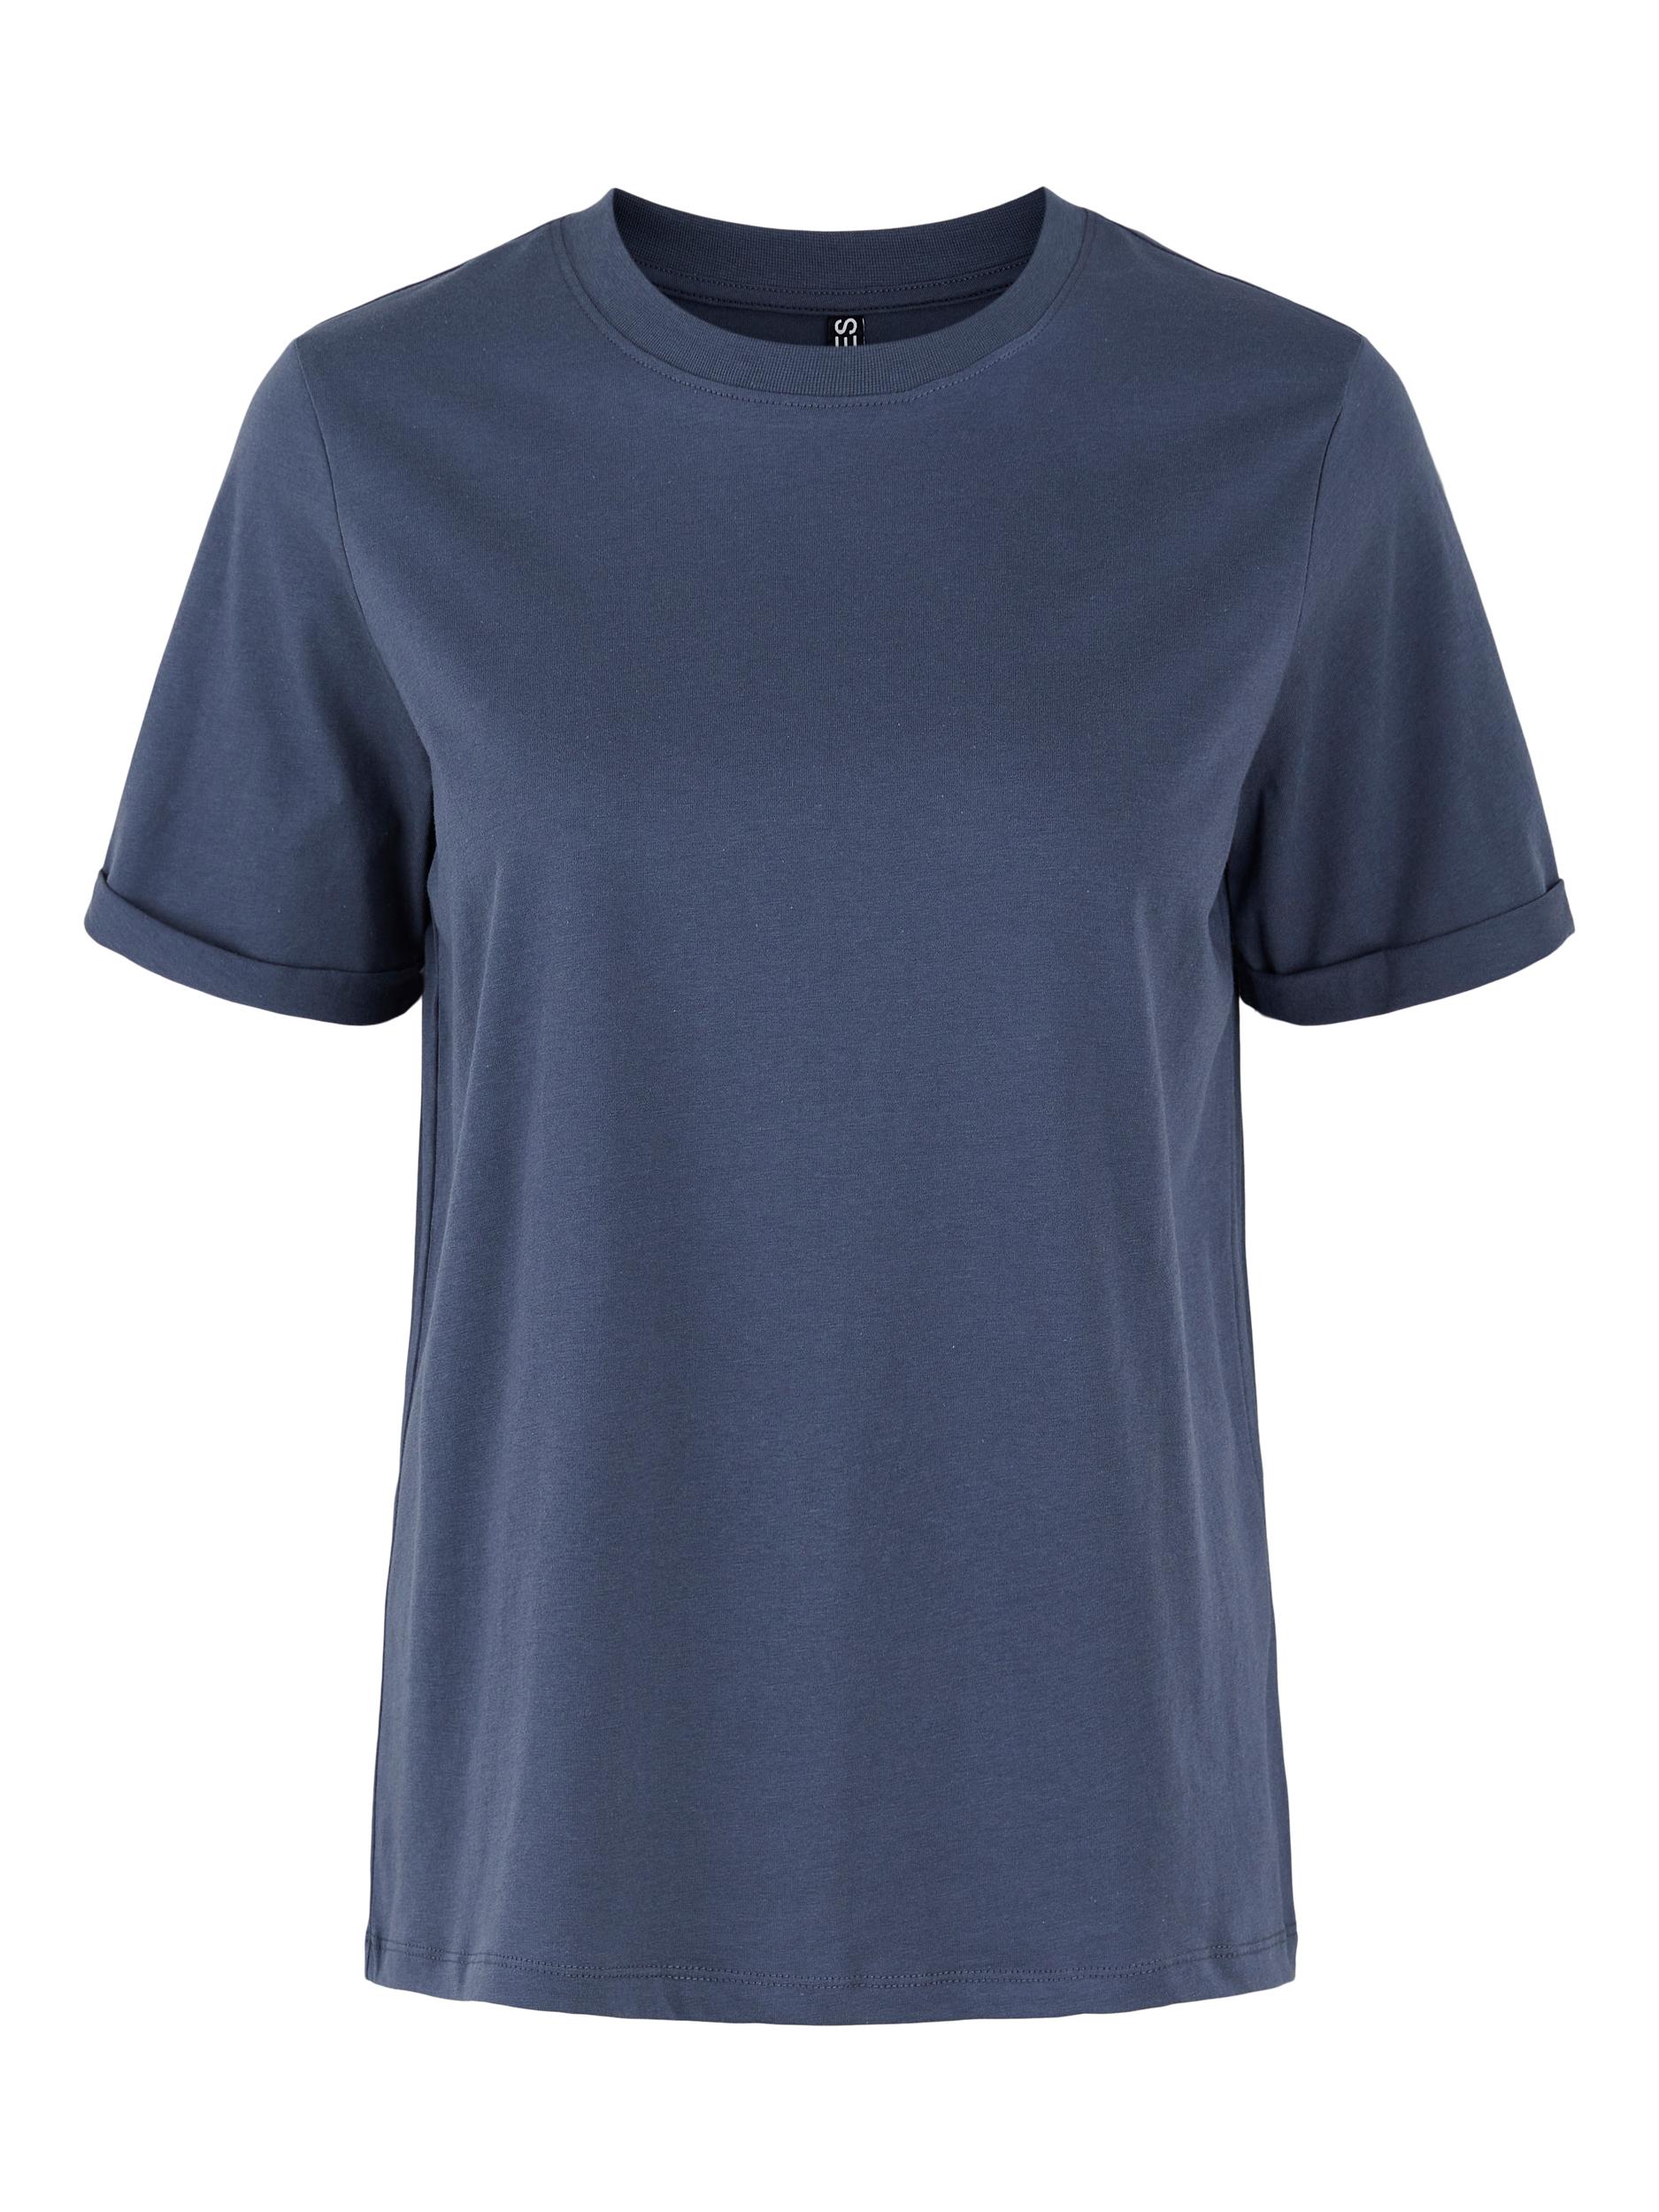 Odzież uGgLj PIECES Koszulka Ria w kolorze Granatowym 